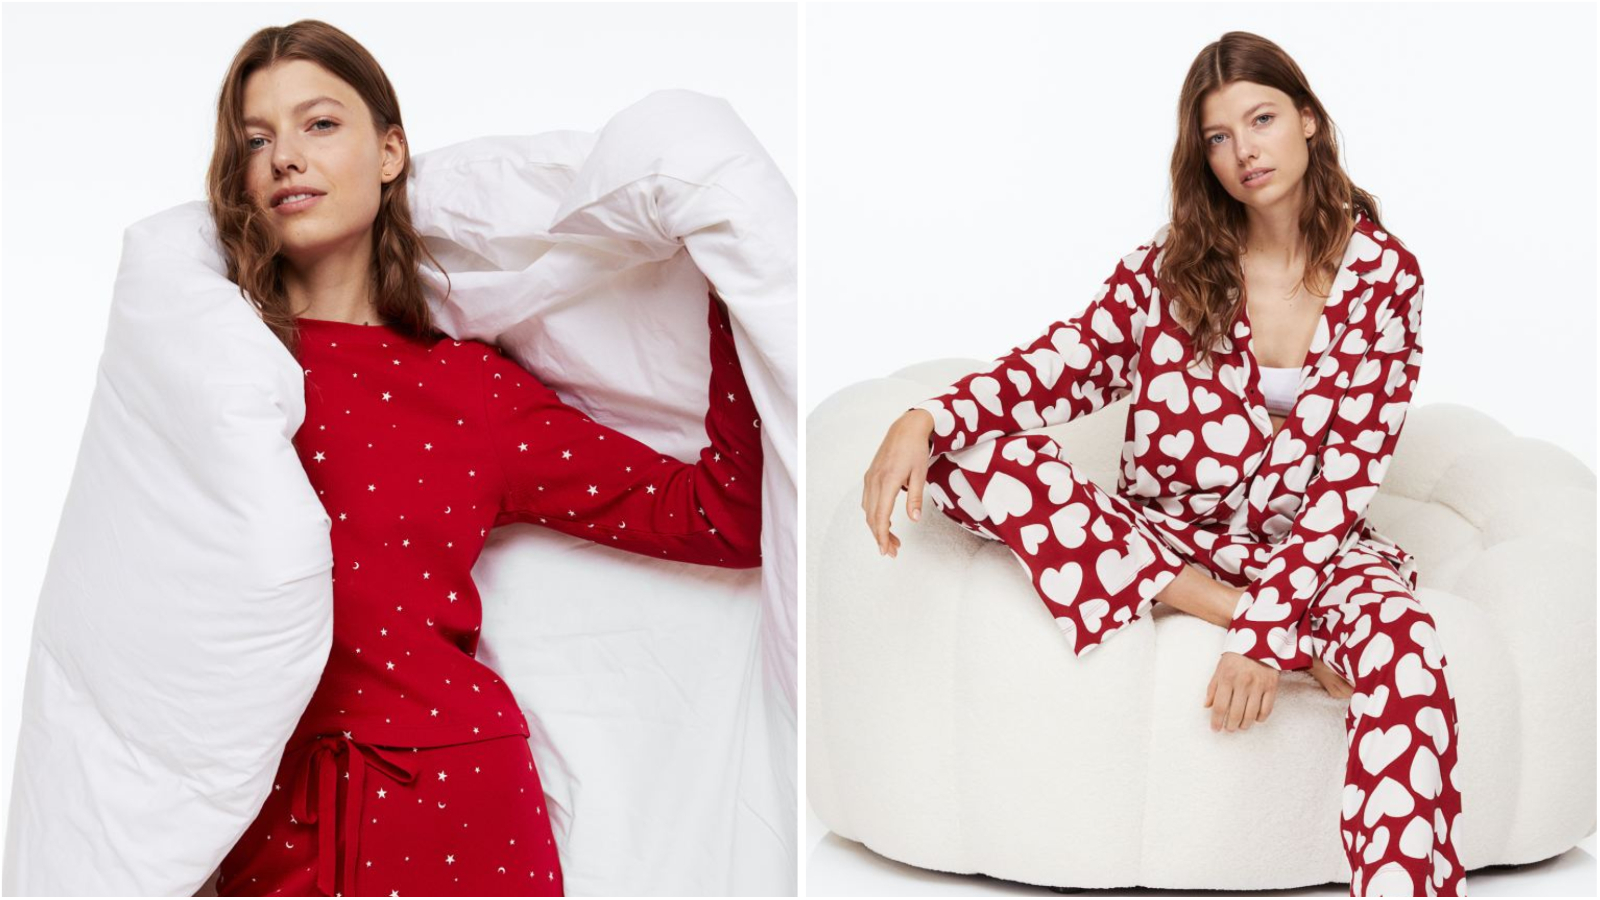 H&M ima divne božićne pidžame koje su idealne za nadolazeće blagdansko razdoblje